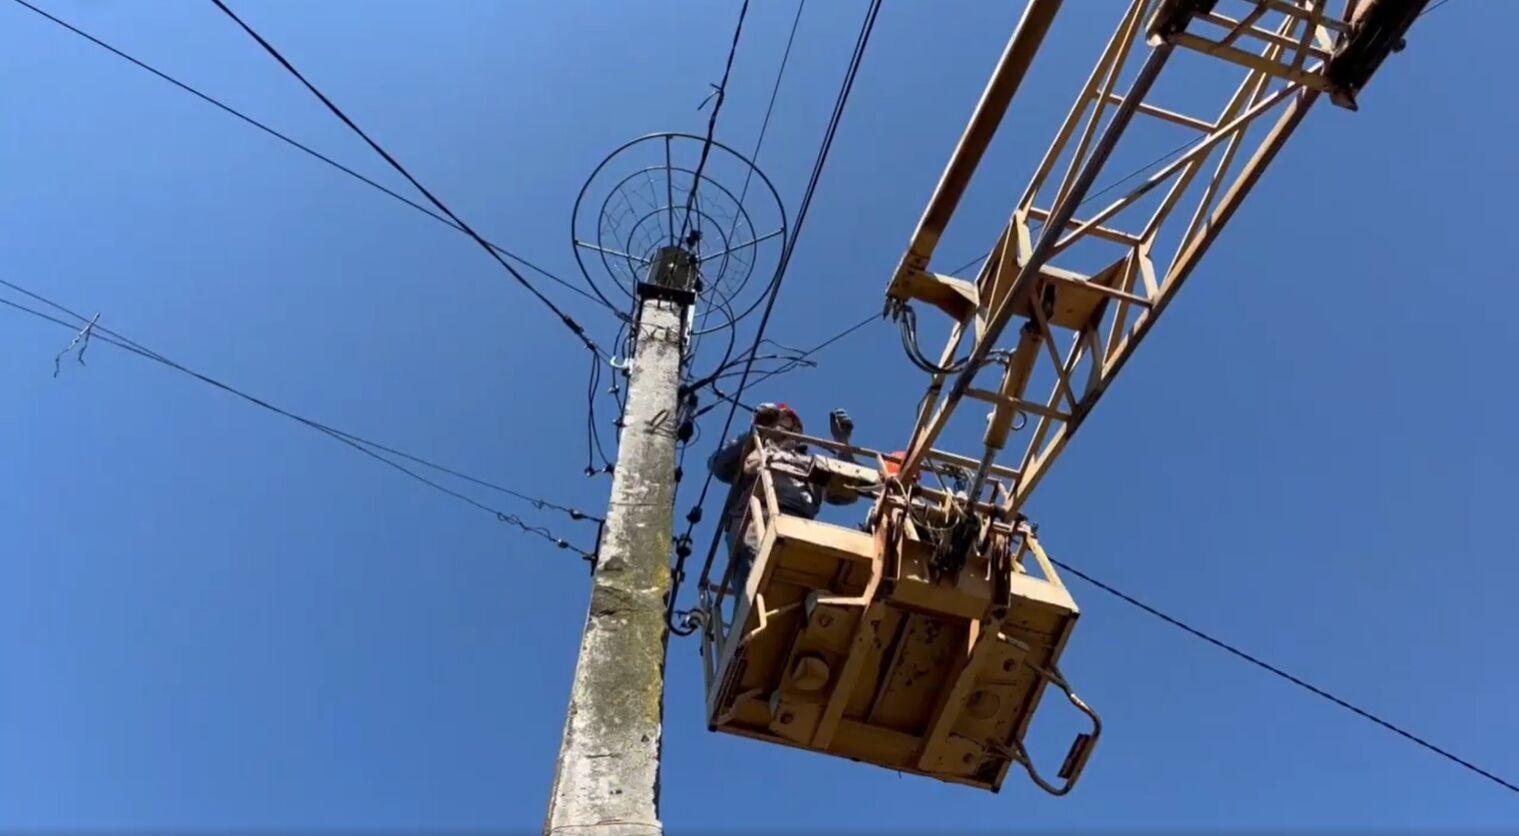  У Києві енергетики облаштували нове гніздо для лелек на електроопорі замість пошкодженого негодою. Відео